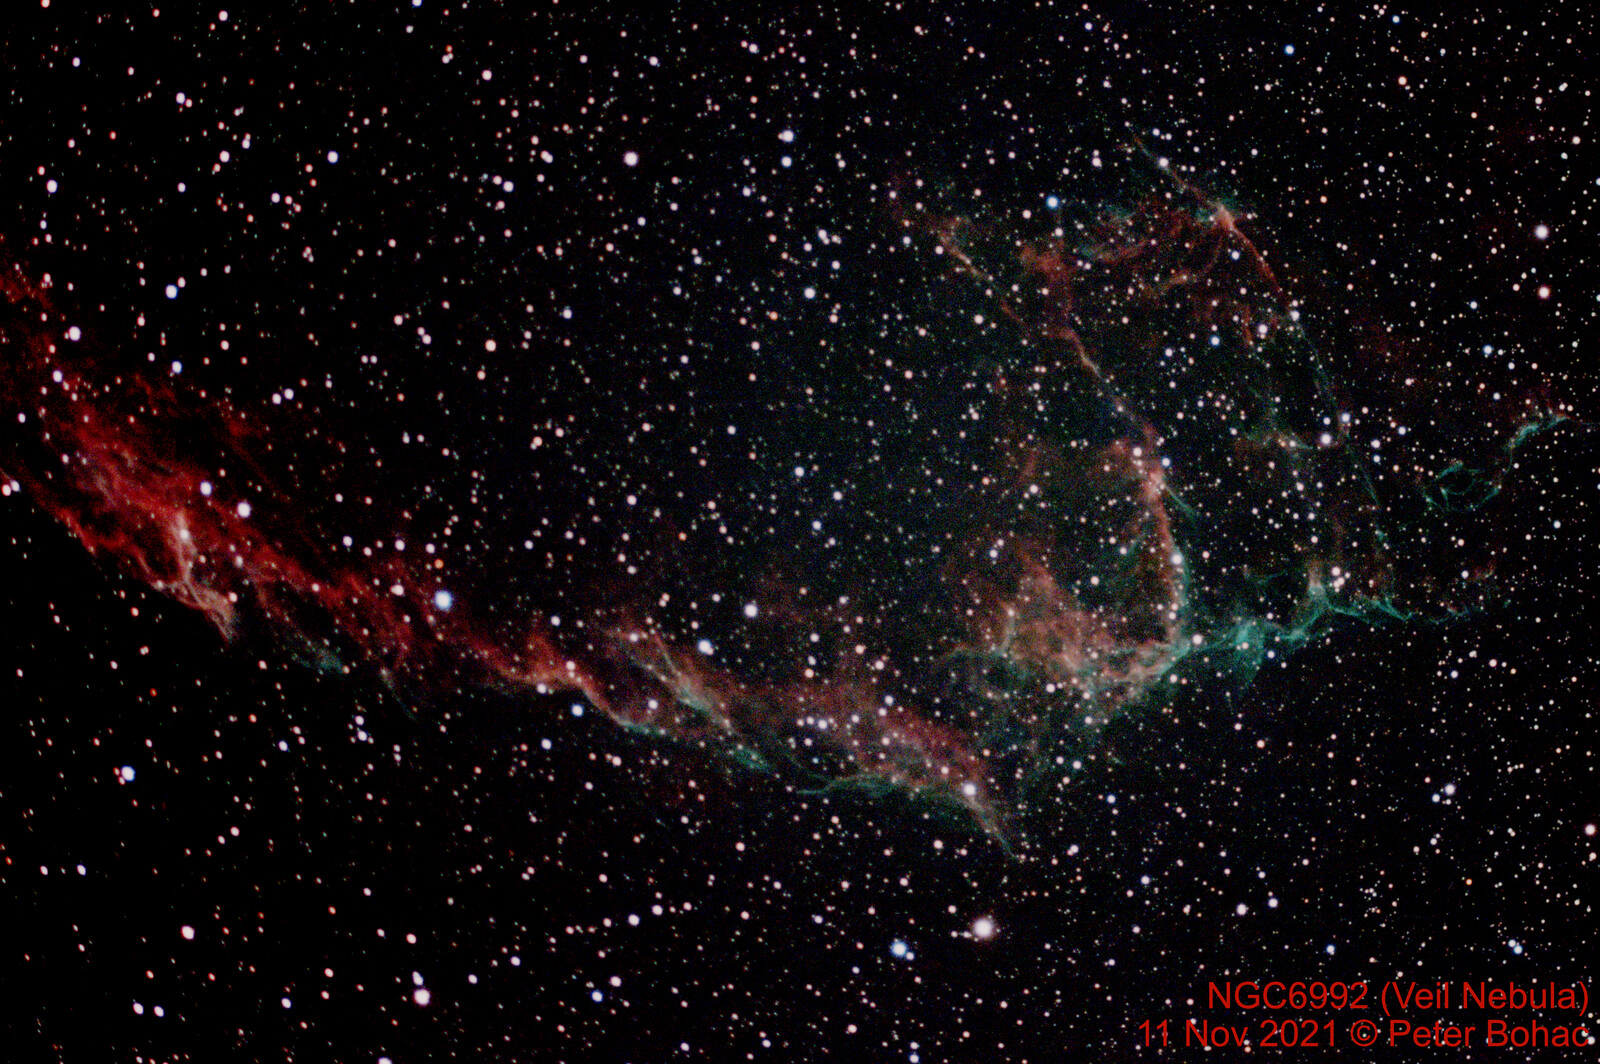 Veil Nebula (NGC6992)